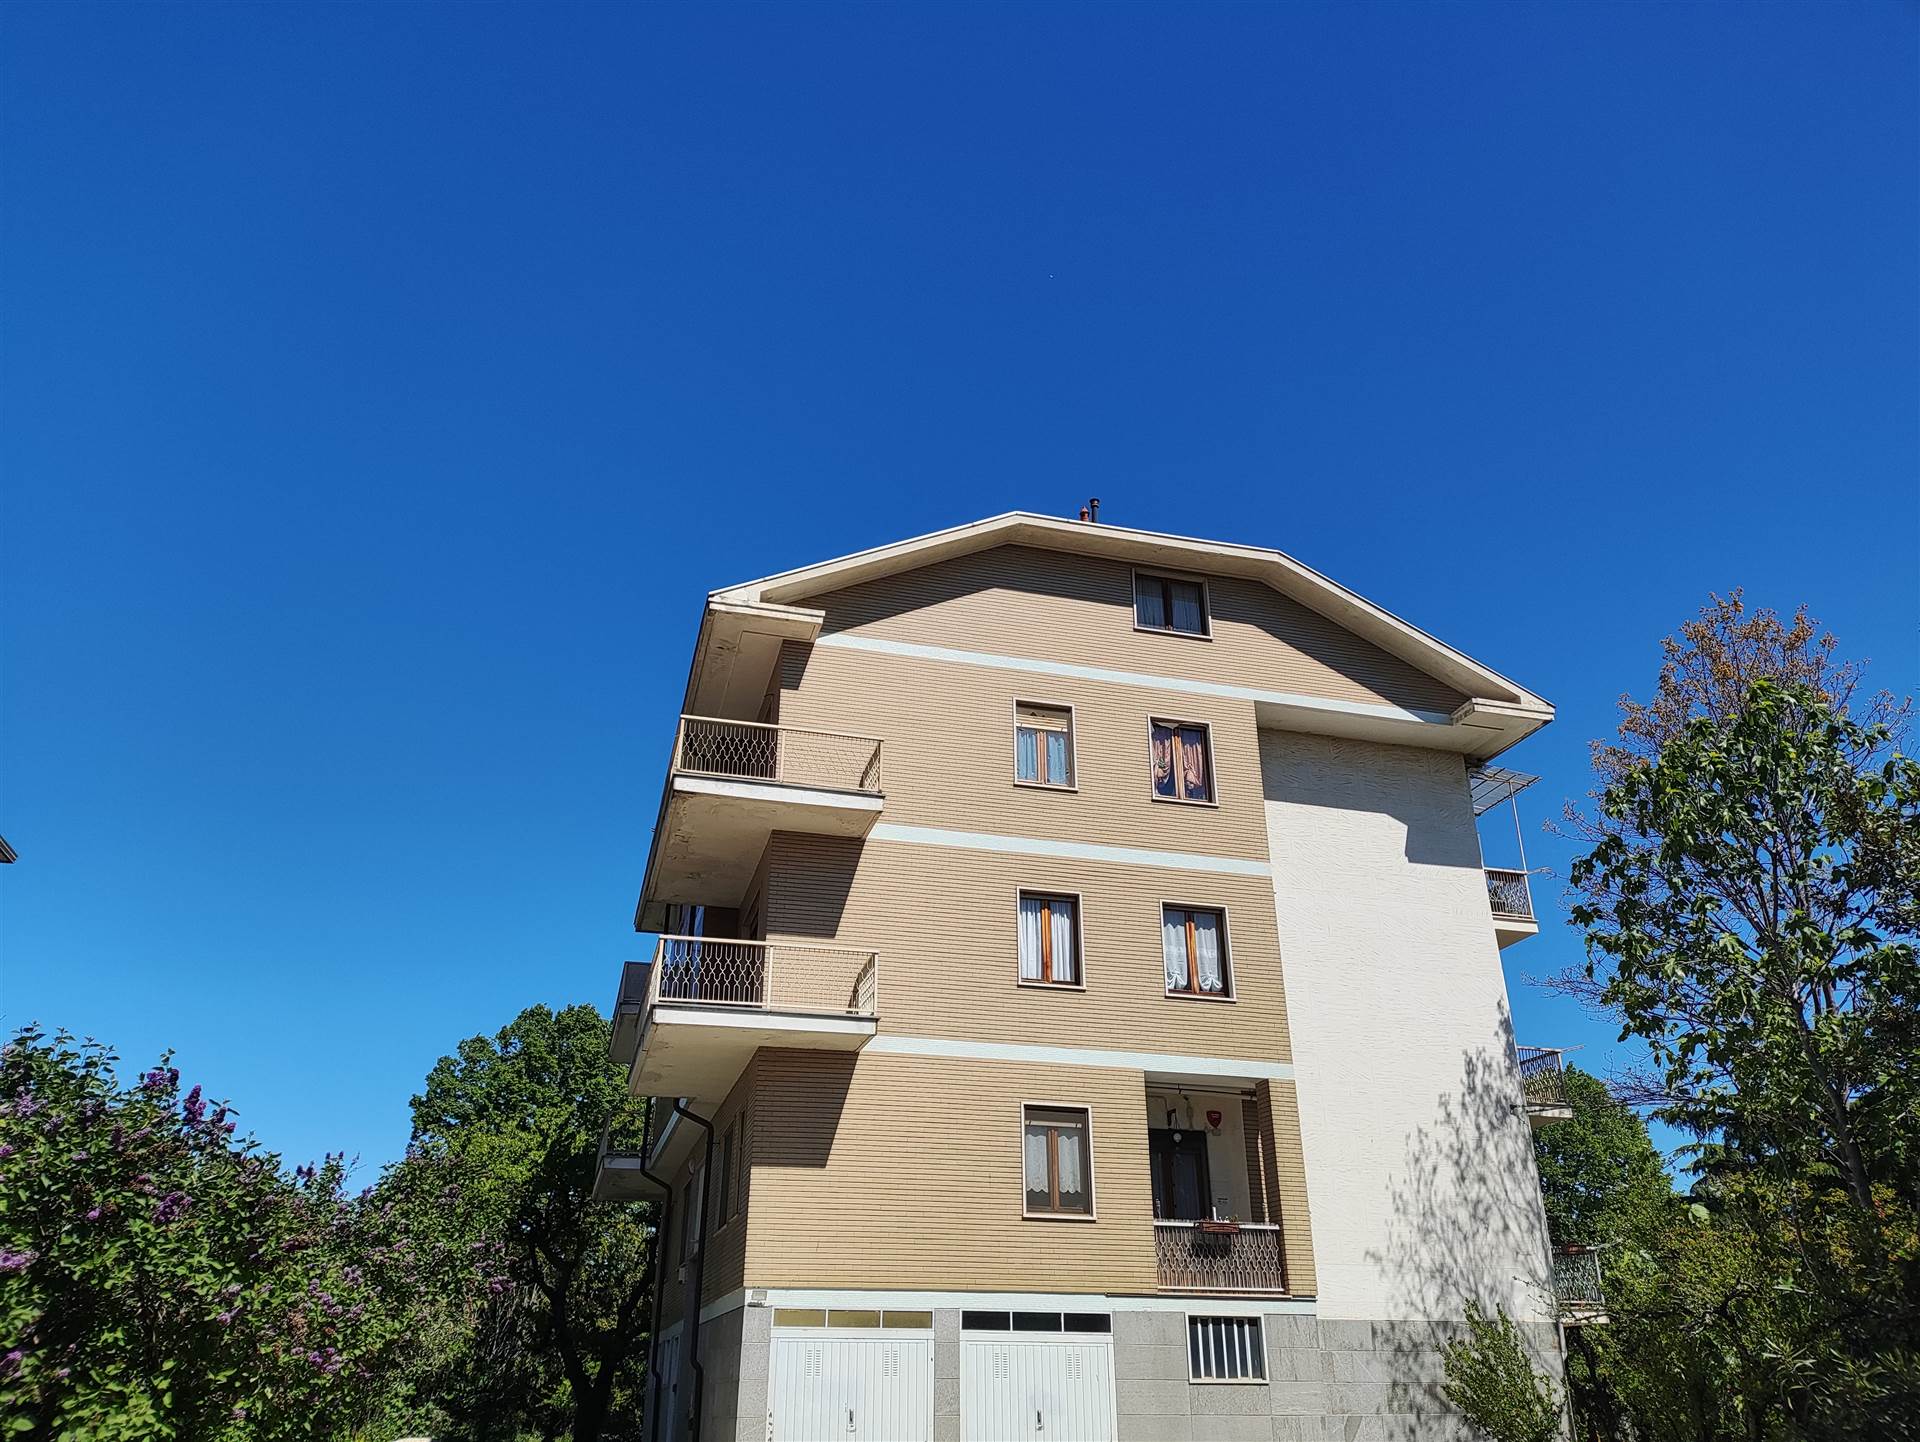 Appartamento in affitto a Piossasco, 3 locali, zona Località: PIOSSACO, prezzo € 450 | PortaleAgenzieImmobiliari.it